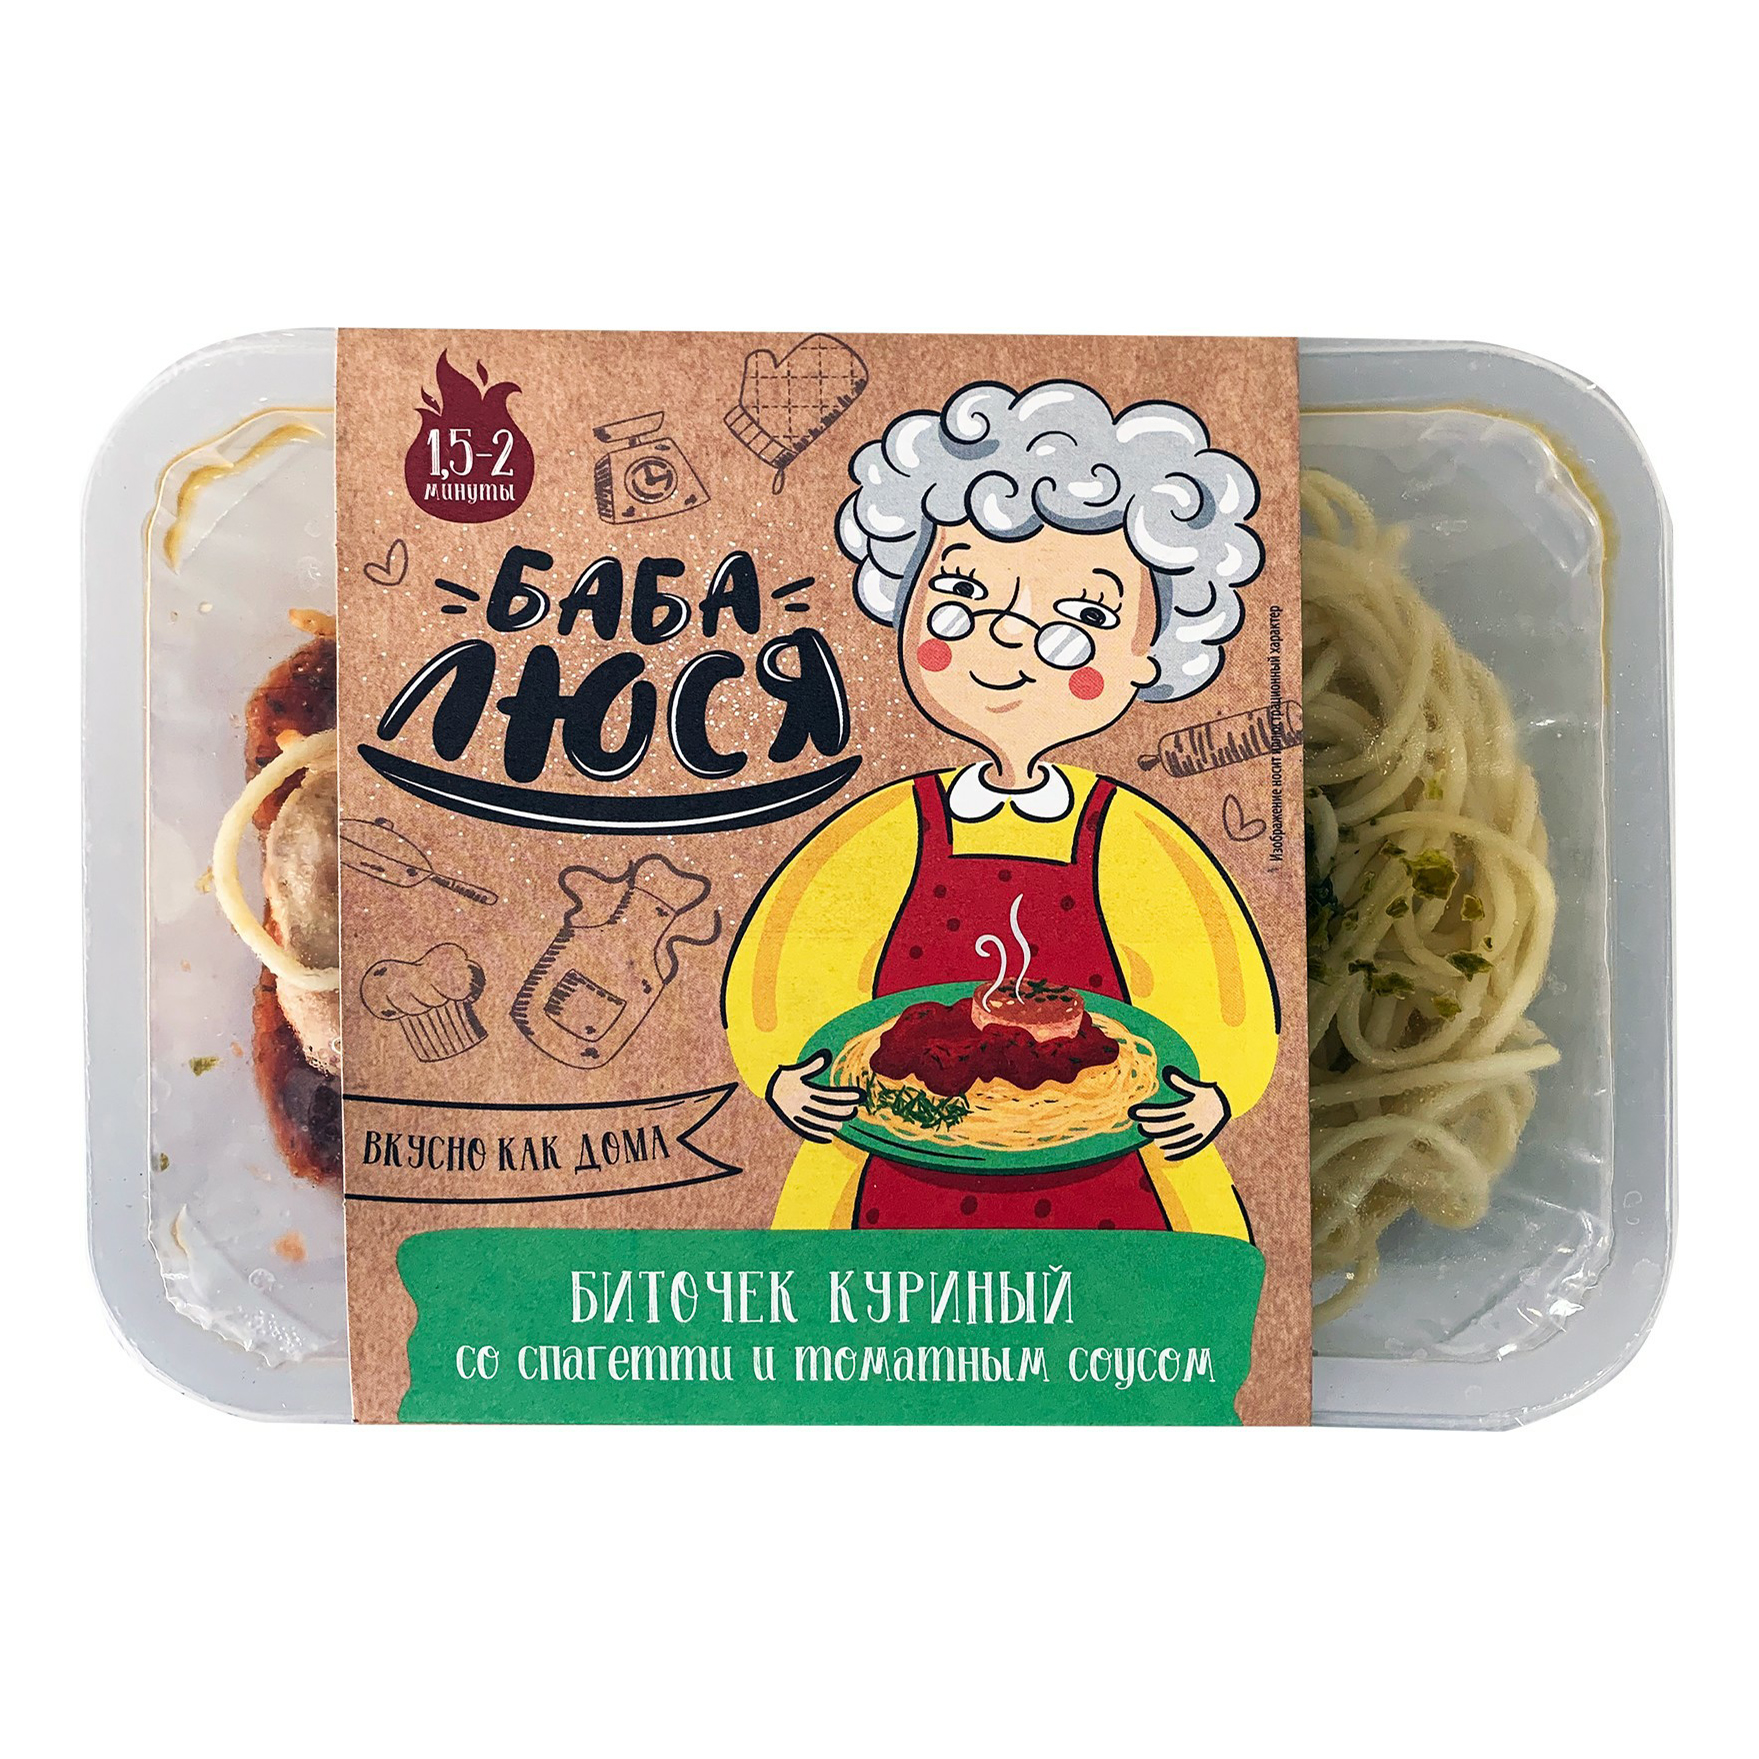 Биточек куриный Баба Люся со спагетти и томатным соусом 250 г